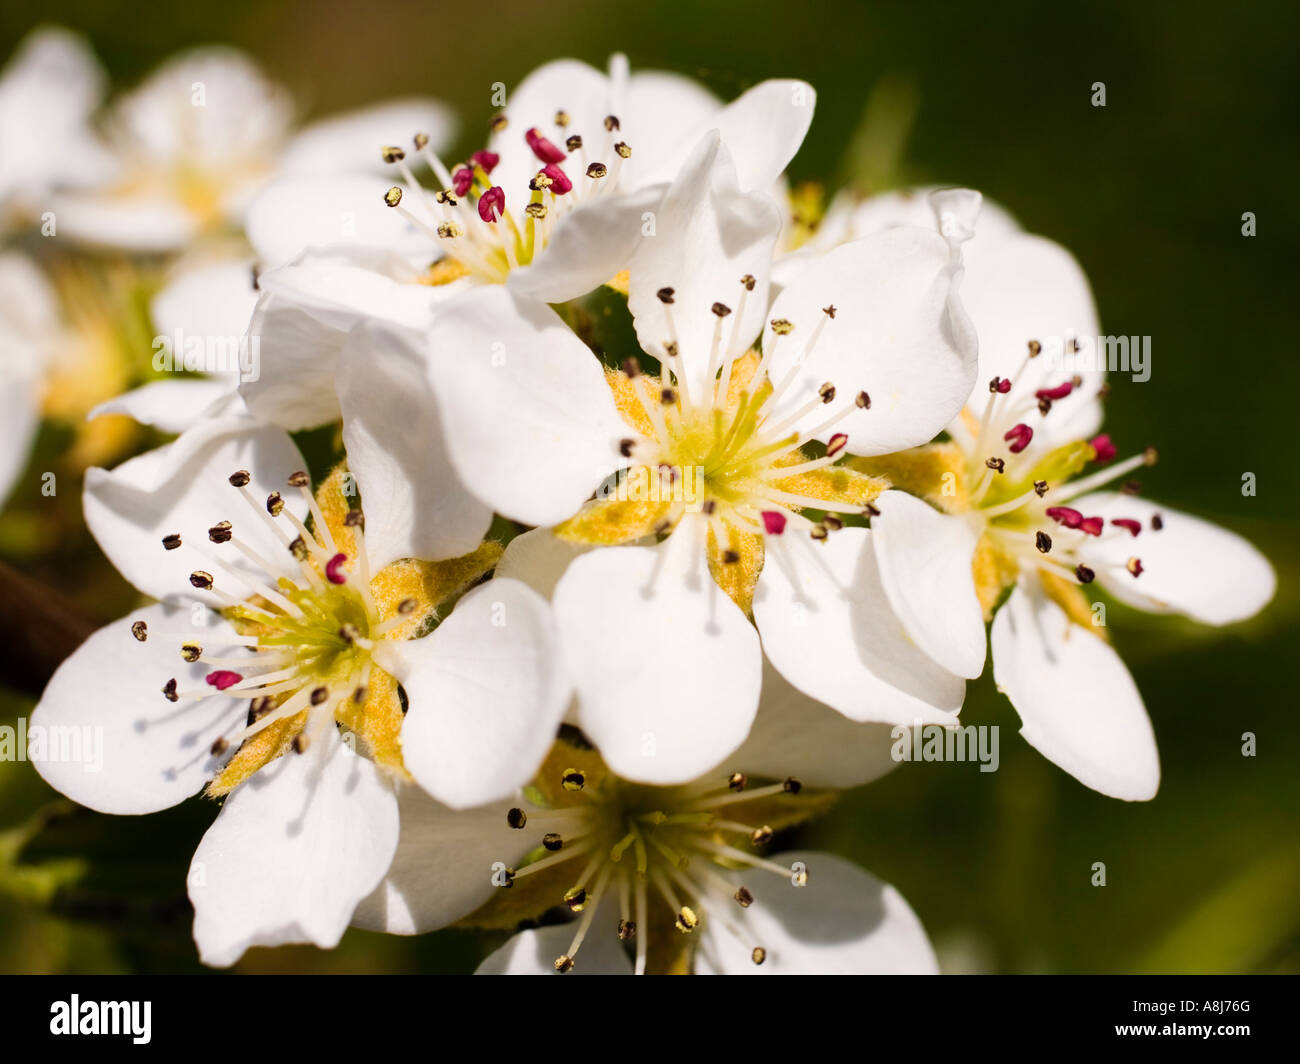 Wild cherry tree blossom, prunus avium, in spring UK Stock Photo